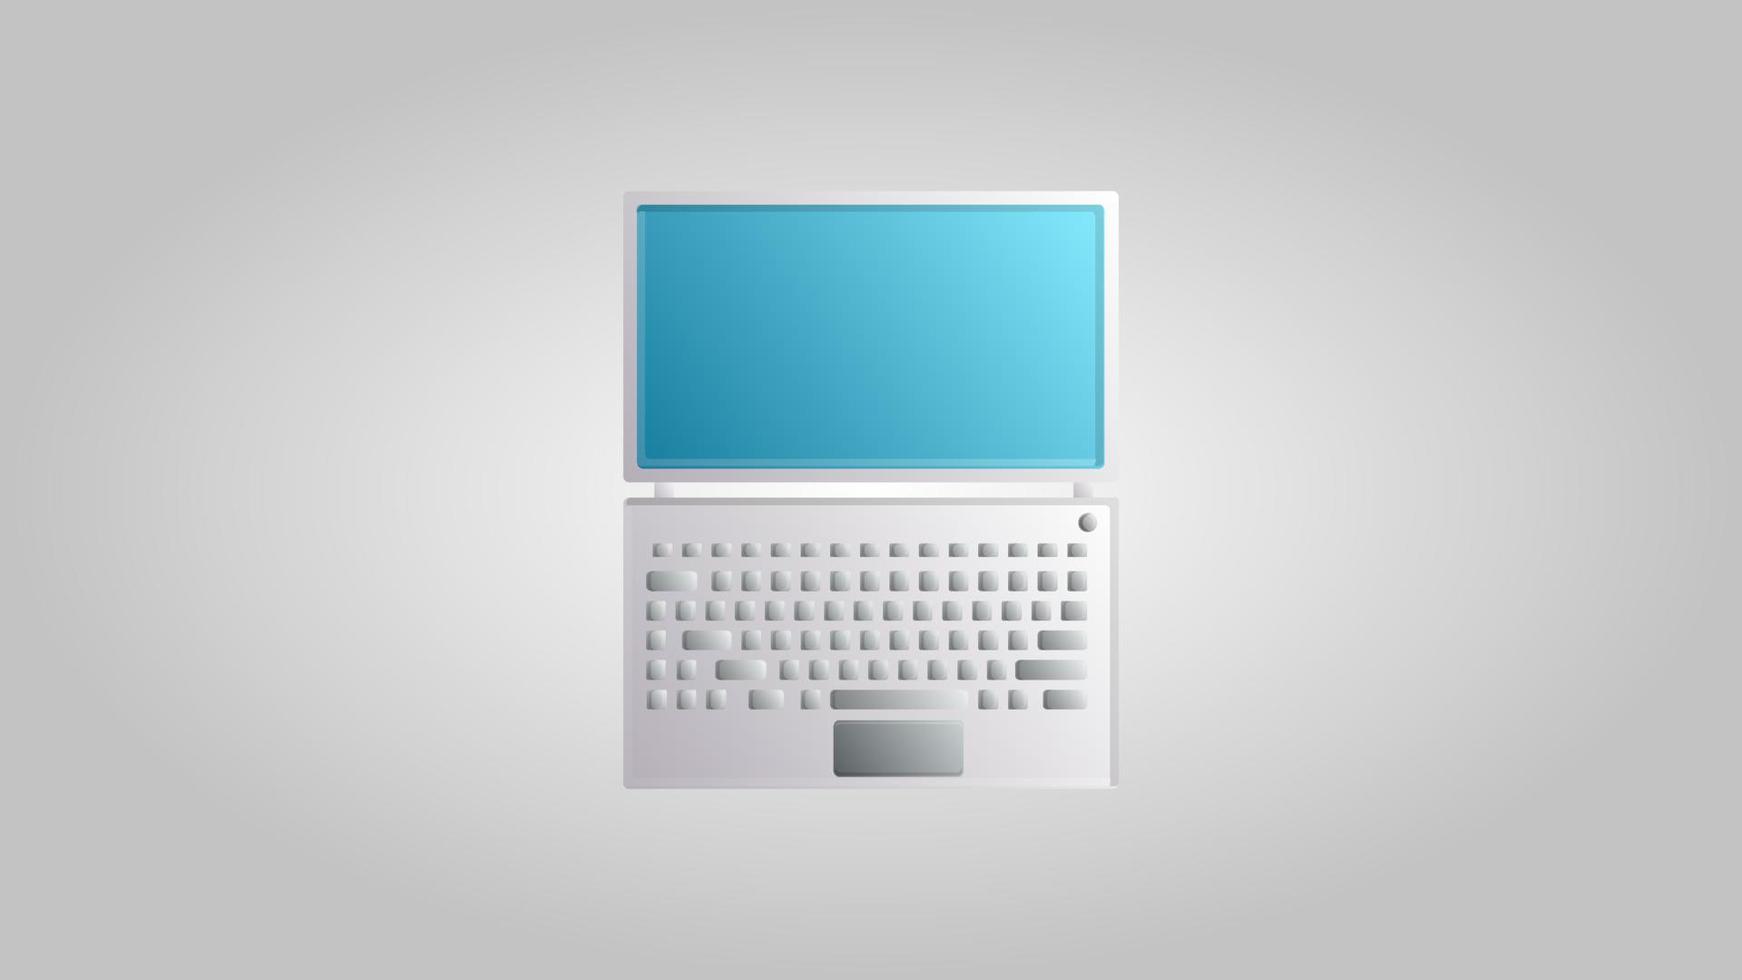 nueva computadora portátil digital moderna para juegos, trabajo y entretenimiento en un fondo blanco. ilustración vectorial vector